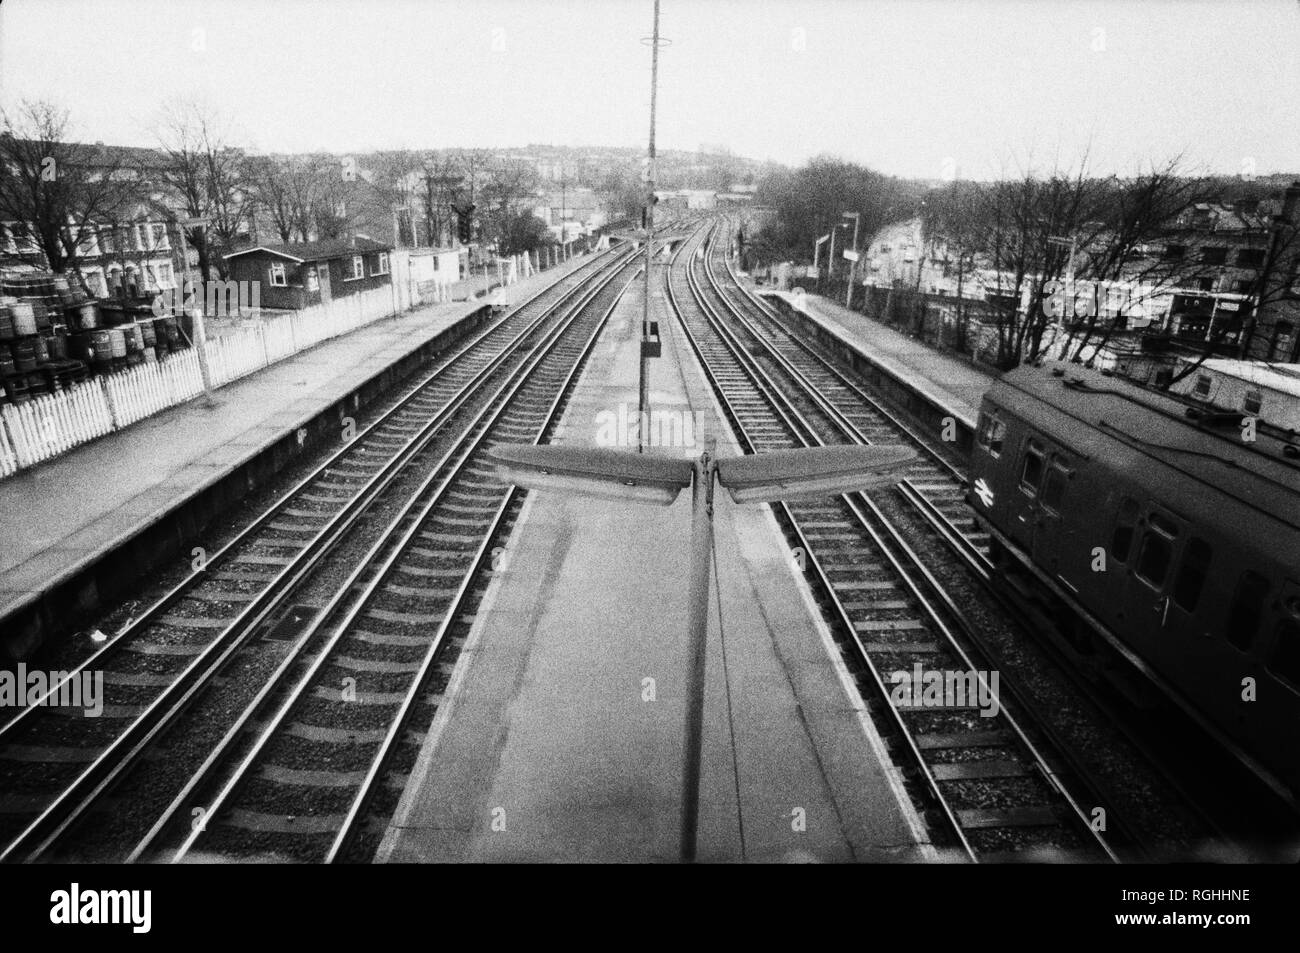 Archive image monochrome de la plate-forme d'une gare ferroviaire du sud de Londres avec train à porte en slam passant par, 1979, Londres, Angleterre Banque D'Images